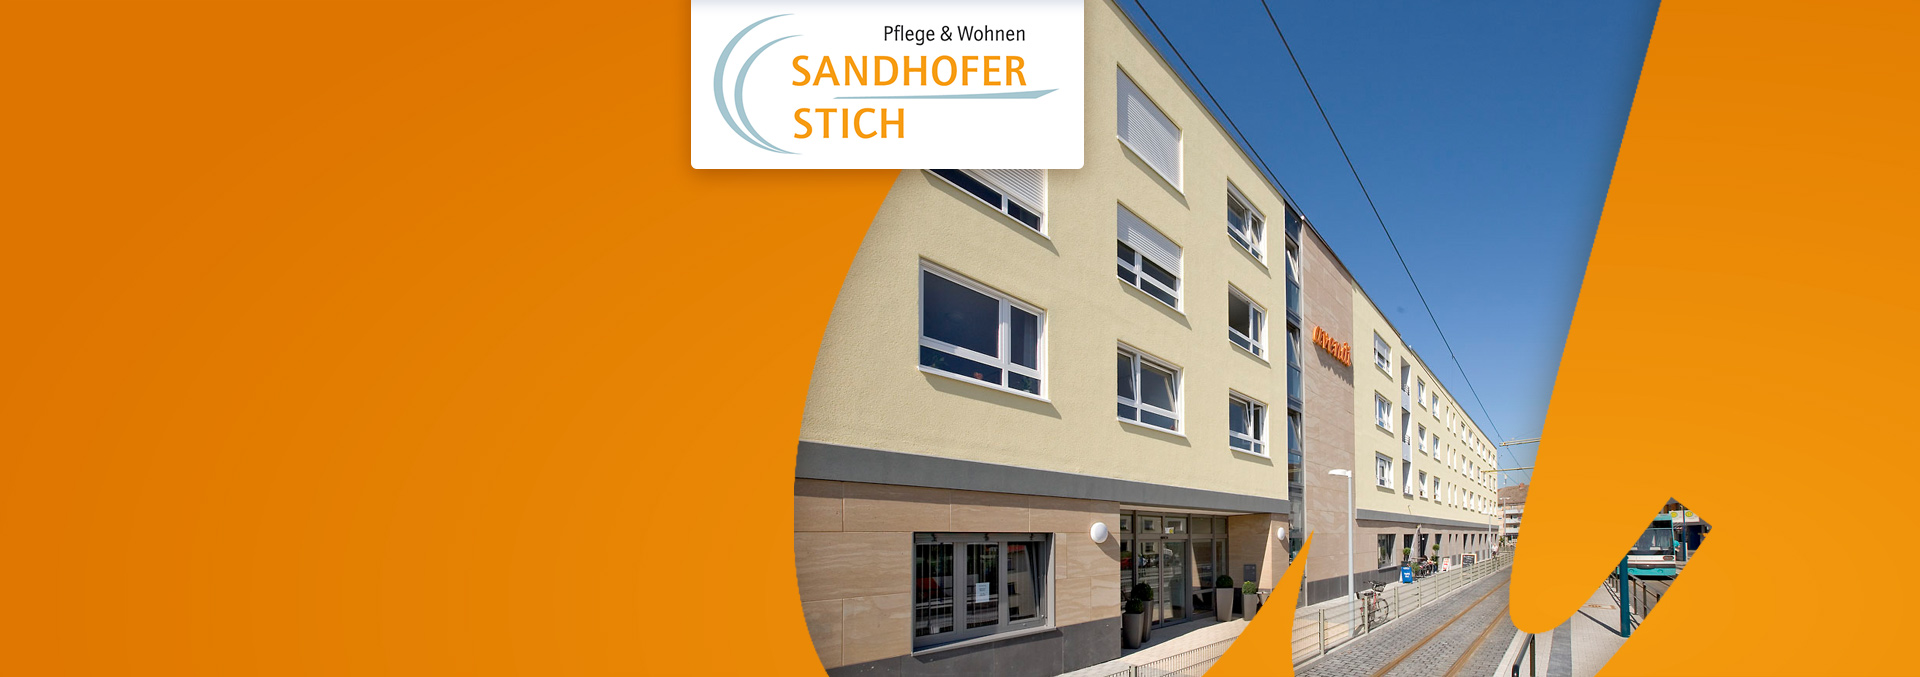 Pflege und Wohnen Sandhofer Stich: Blick auf den Eingang, die Straßenbahn hält in unmittelbarer Nähe.